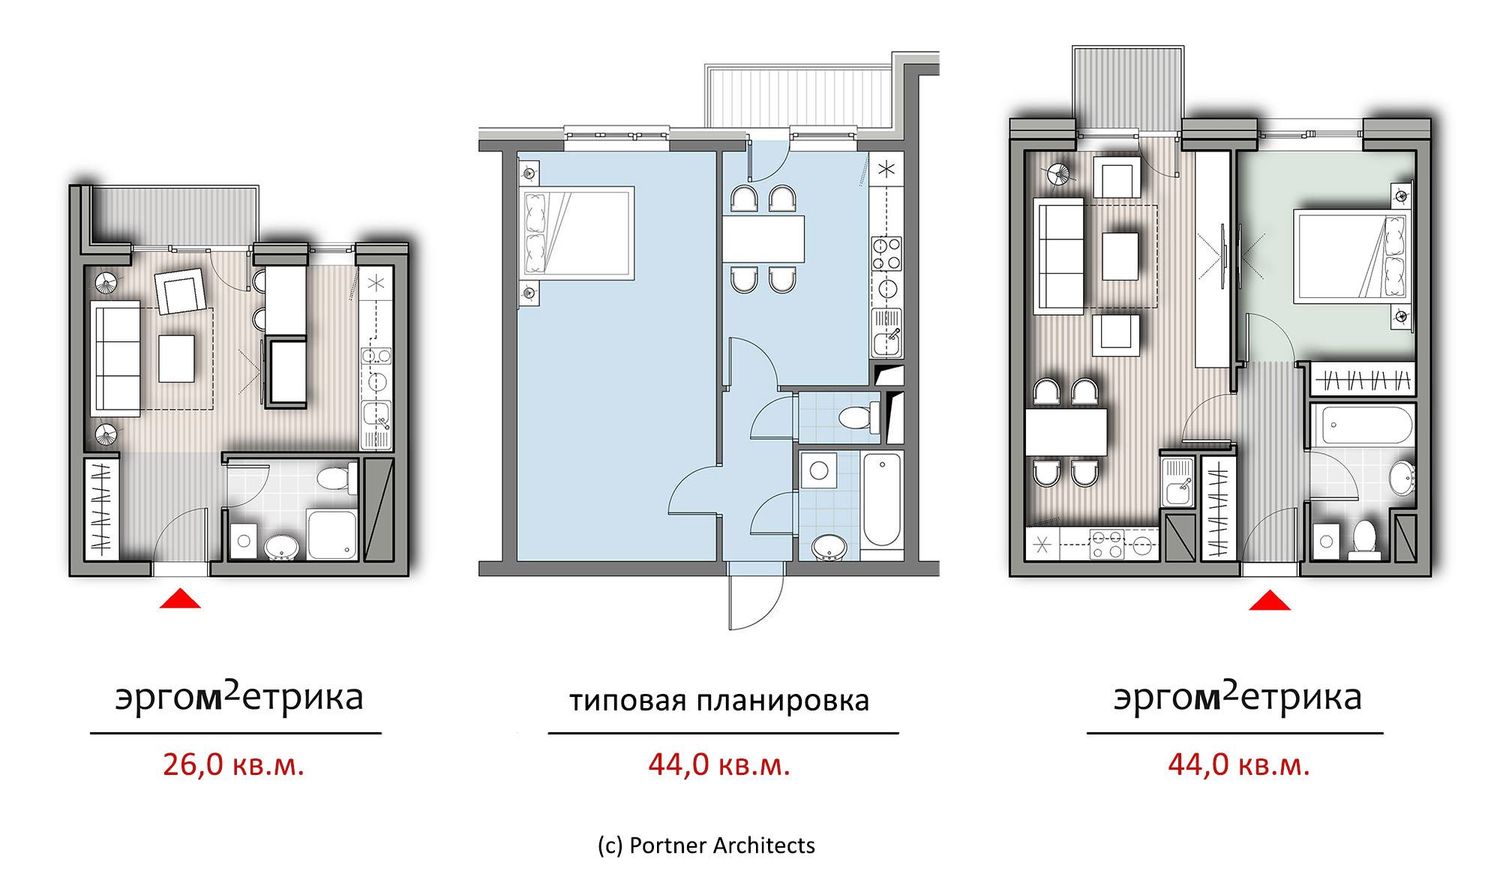 Фото Архитектор Саша Лукич: Квартиры, которые предлагает сегодня рынок, имеют около 30% нефункциональной площади